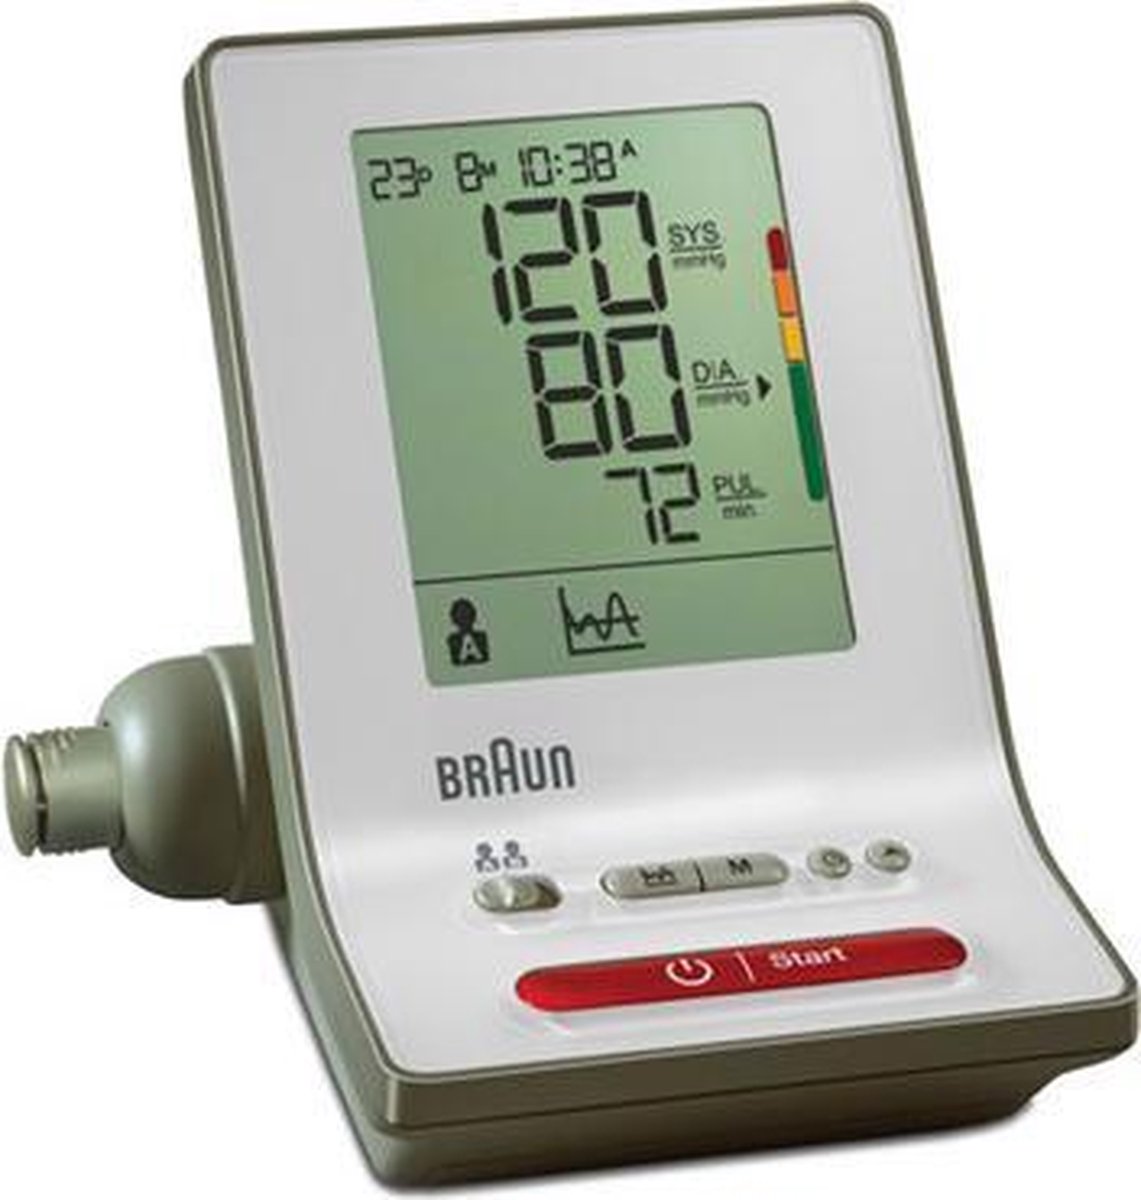 Braun BP6000 - Bovenarm bloeddrukmeter - Braun